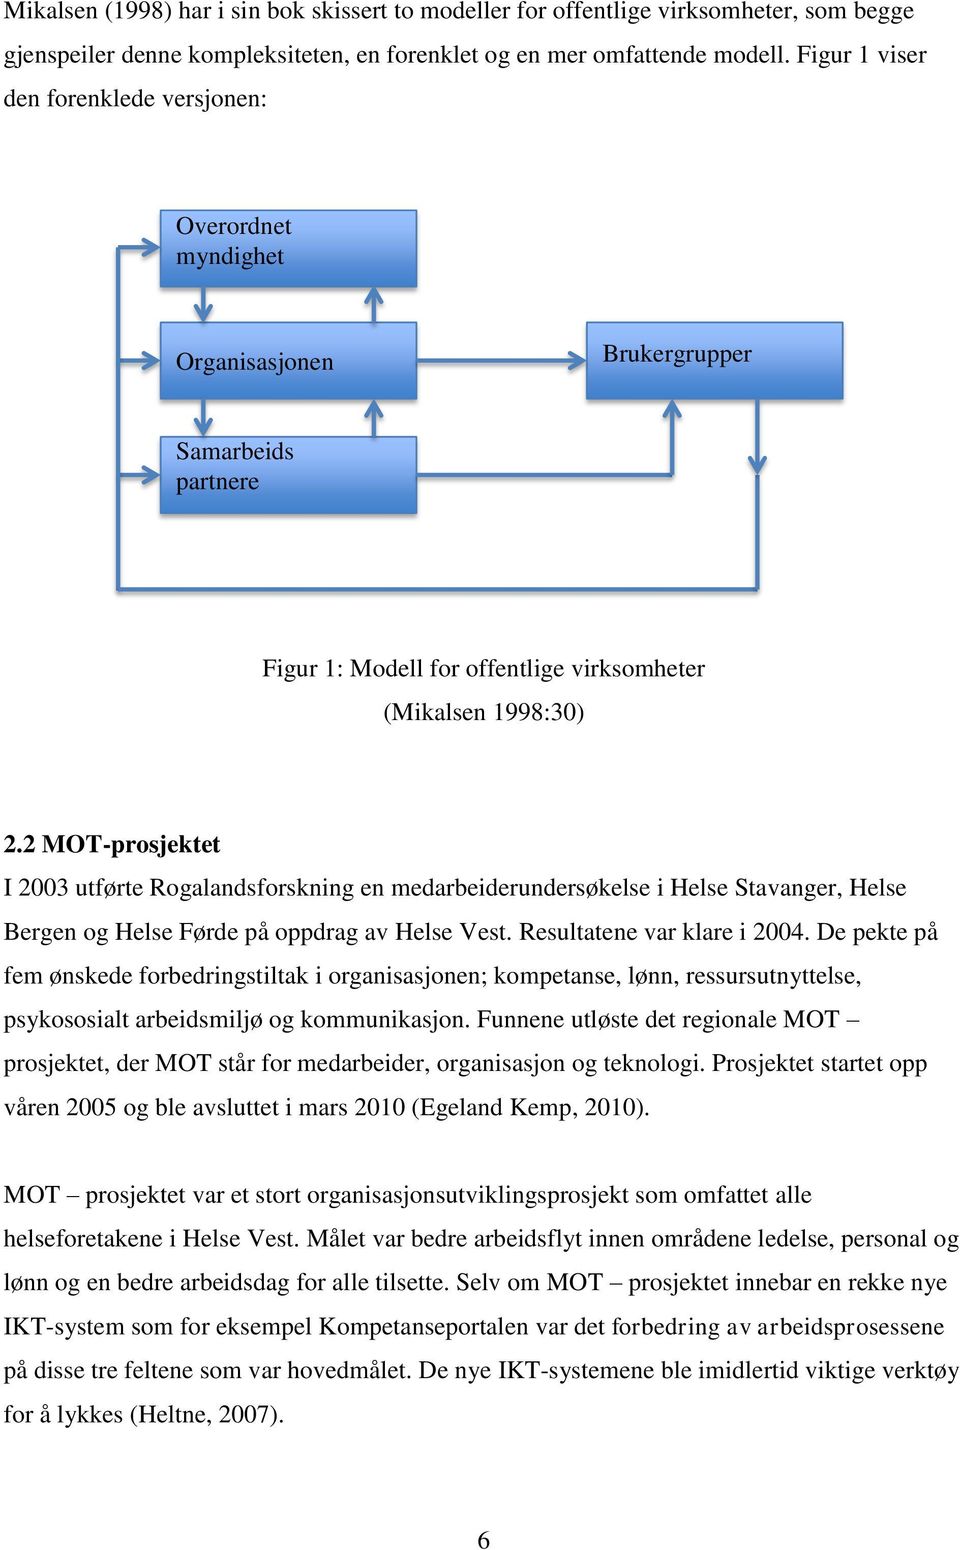 2 MOT-prosjektet I 2003 utførte Rogalandsforskning en medarbeiderundersøkelse i Helse Stavanger, Helse Bergen og Helse Førde på oppdrag av Helse Vest. Resultatene var klare i 2004.